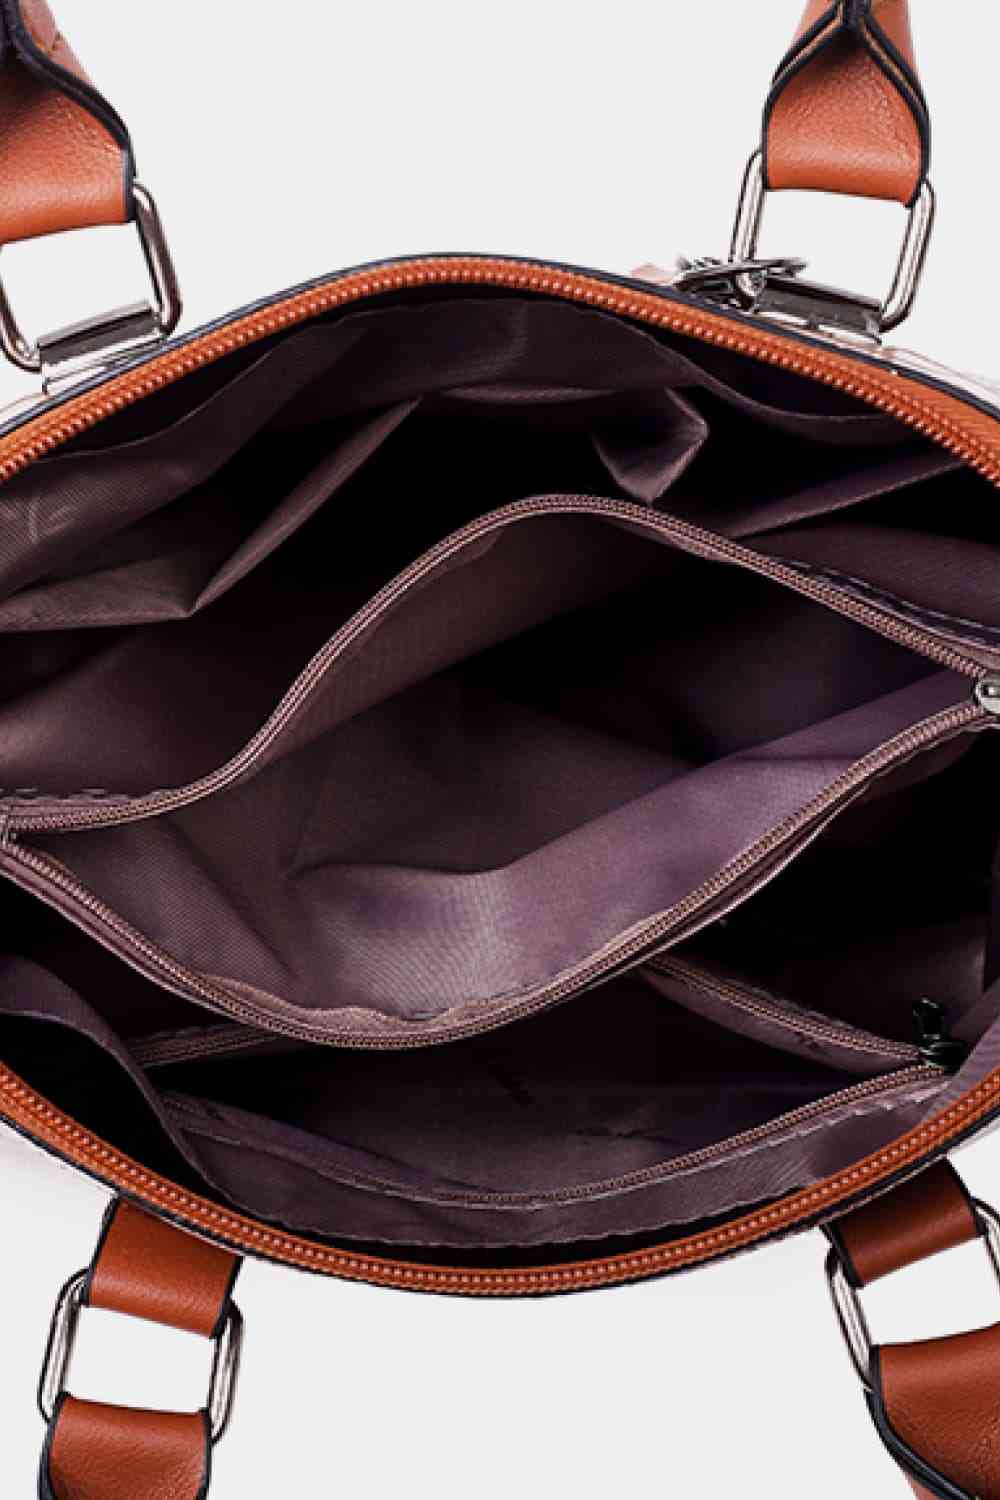 TEEK - 4-Piece Purpose Leather Bag Set SET TEEK Trend   